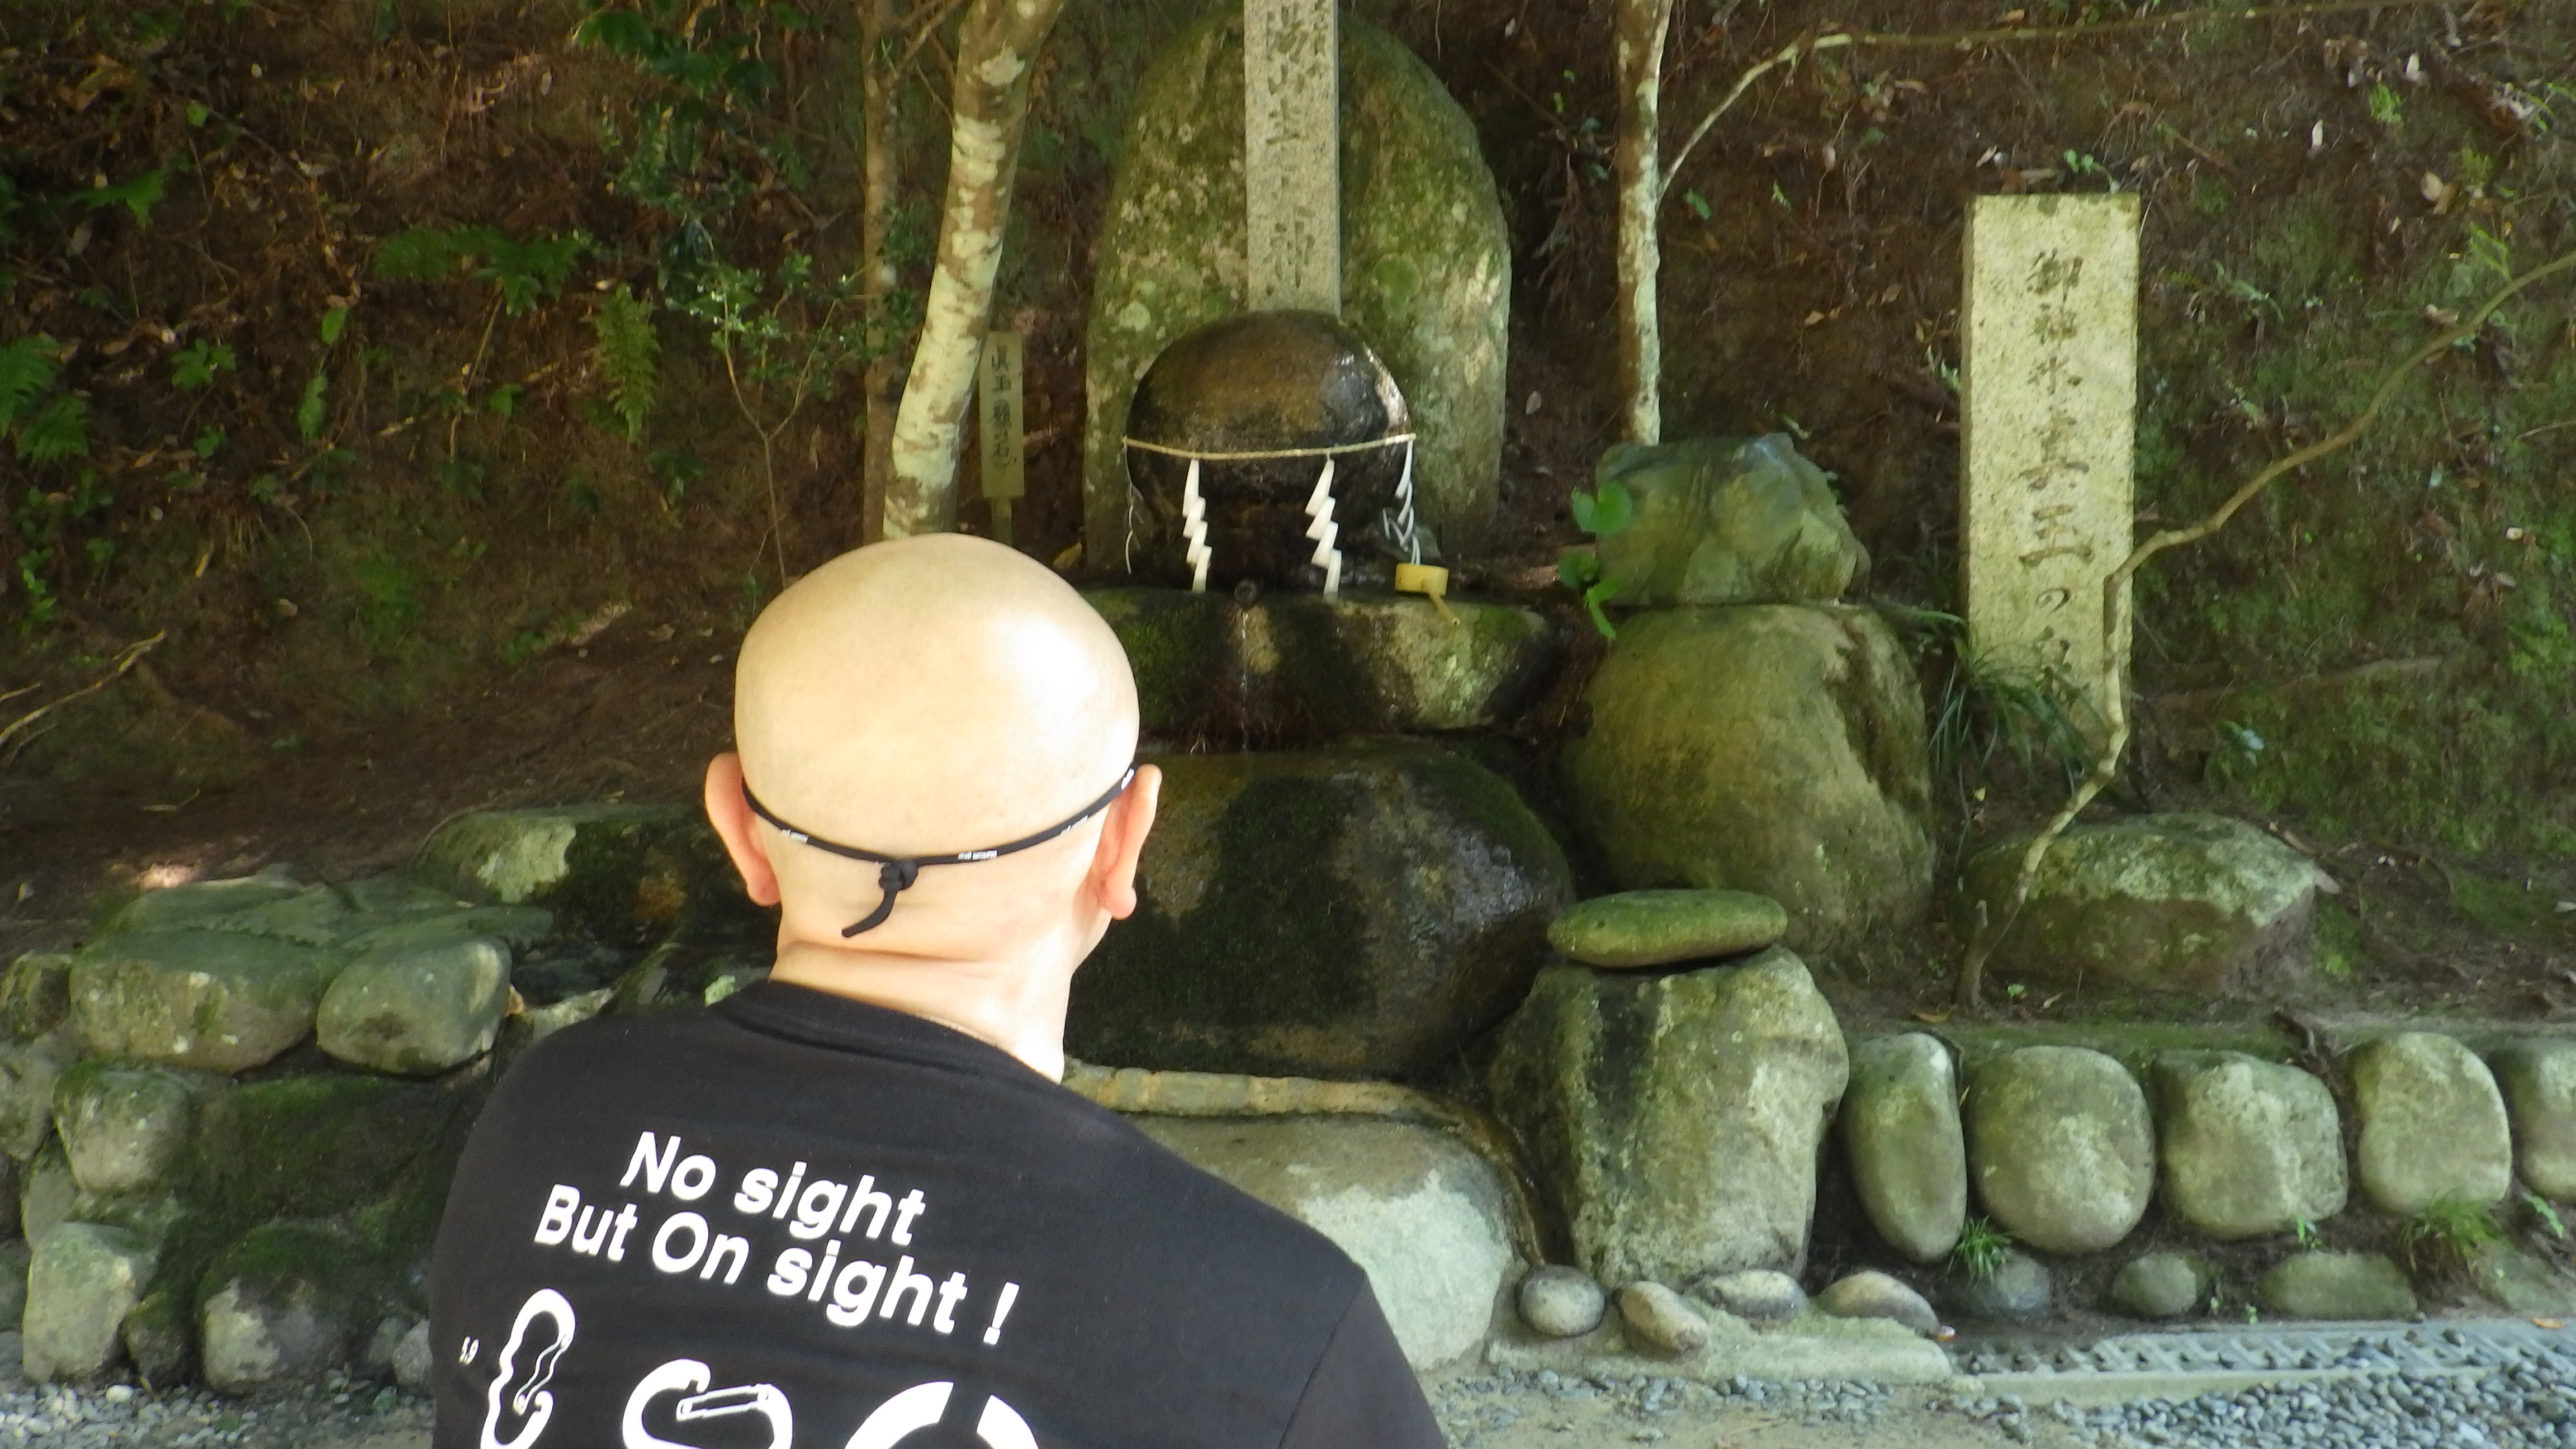 玉作湯神社の願い石 観光 コラム 裏情報 イベント情報満載の島根を応援する島根県公認コミュニティ リメンバーしまね